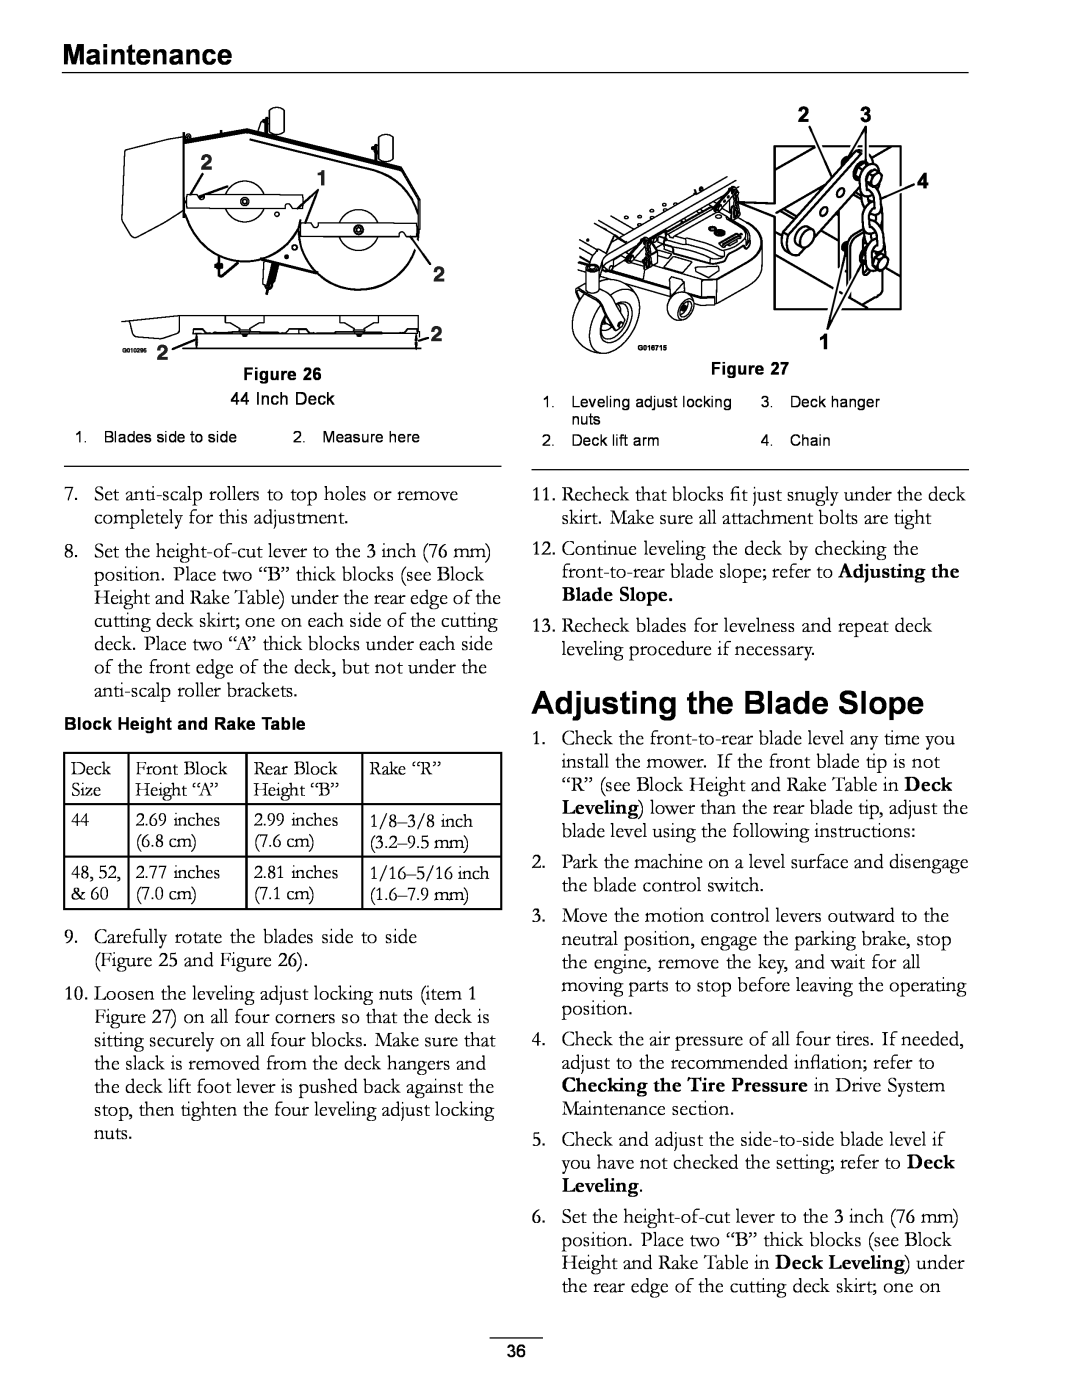 Exmark 000 & higher, 312 manual Adjusting the Blade Slope, Maintenance 